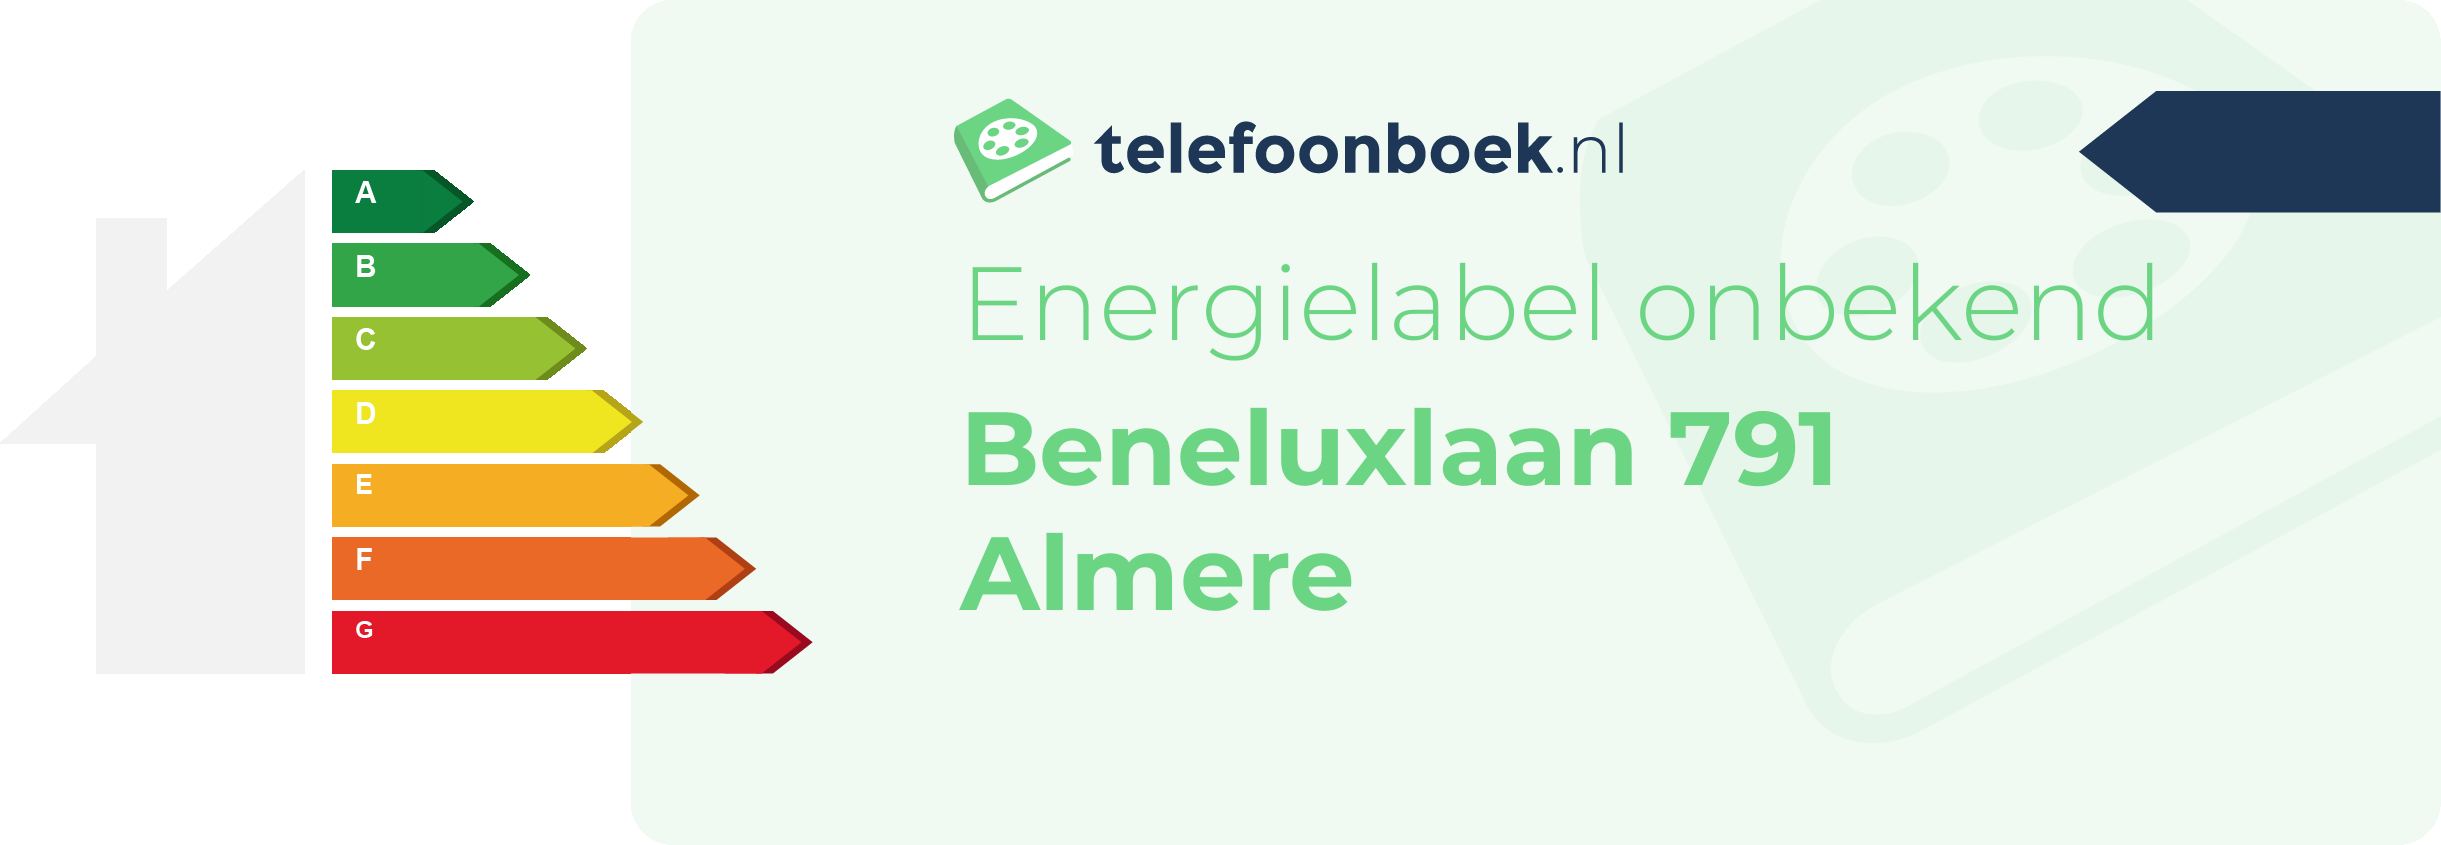 Energielabel Beneluxlaan 791 Almere